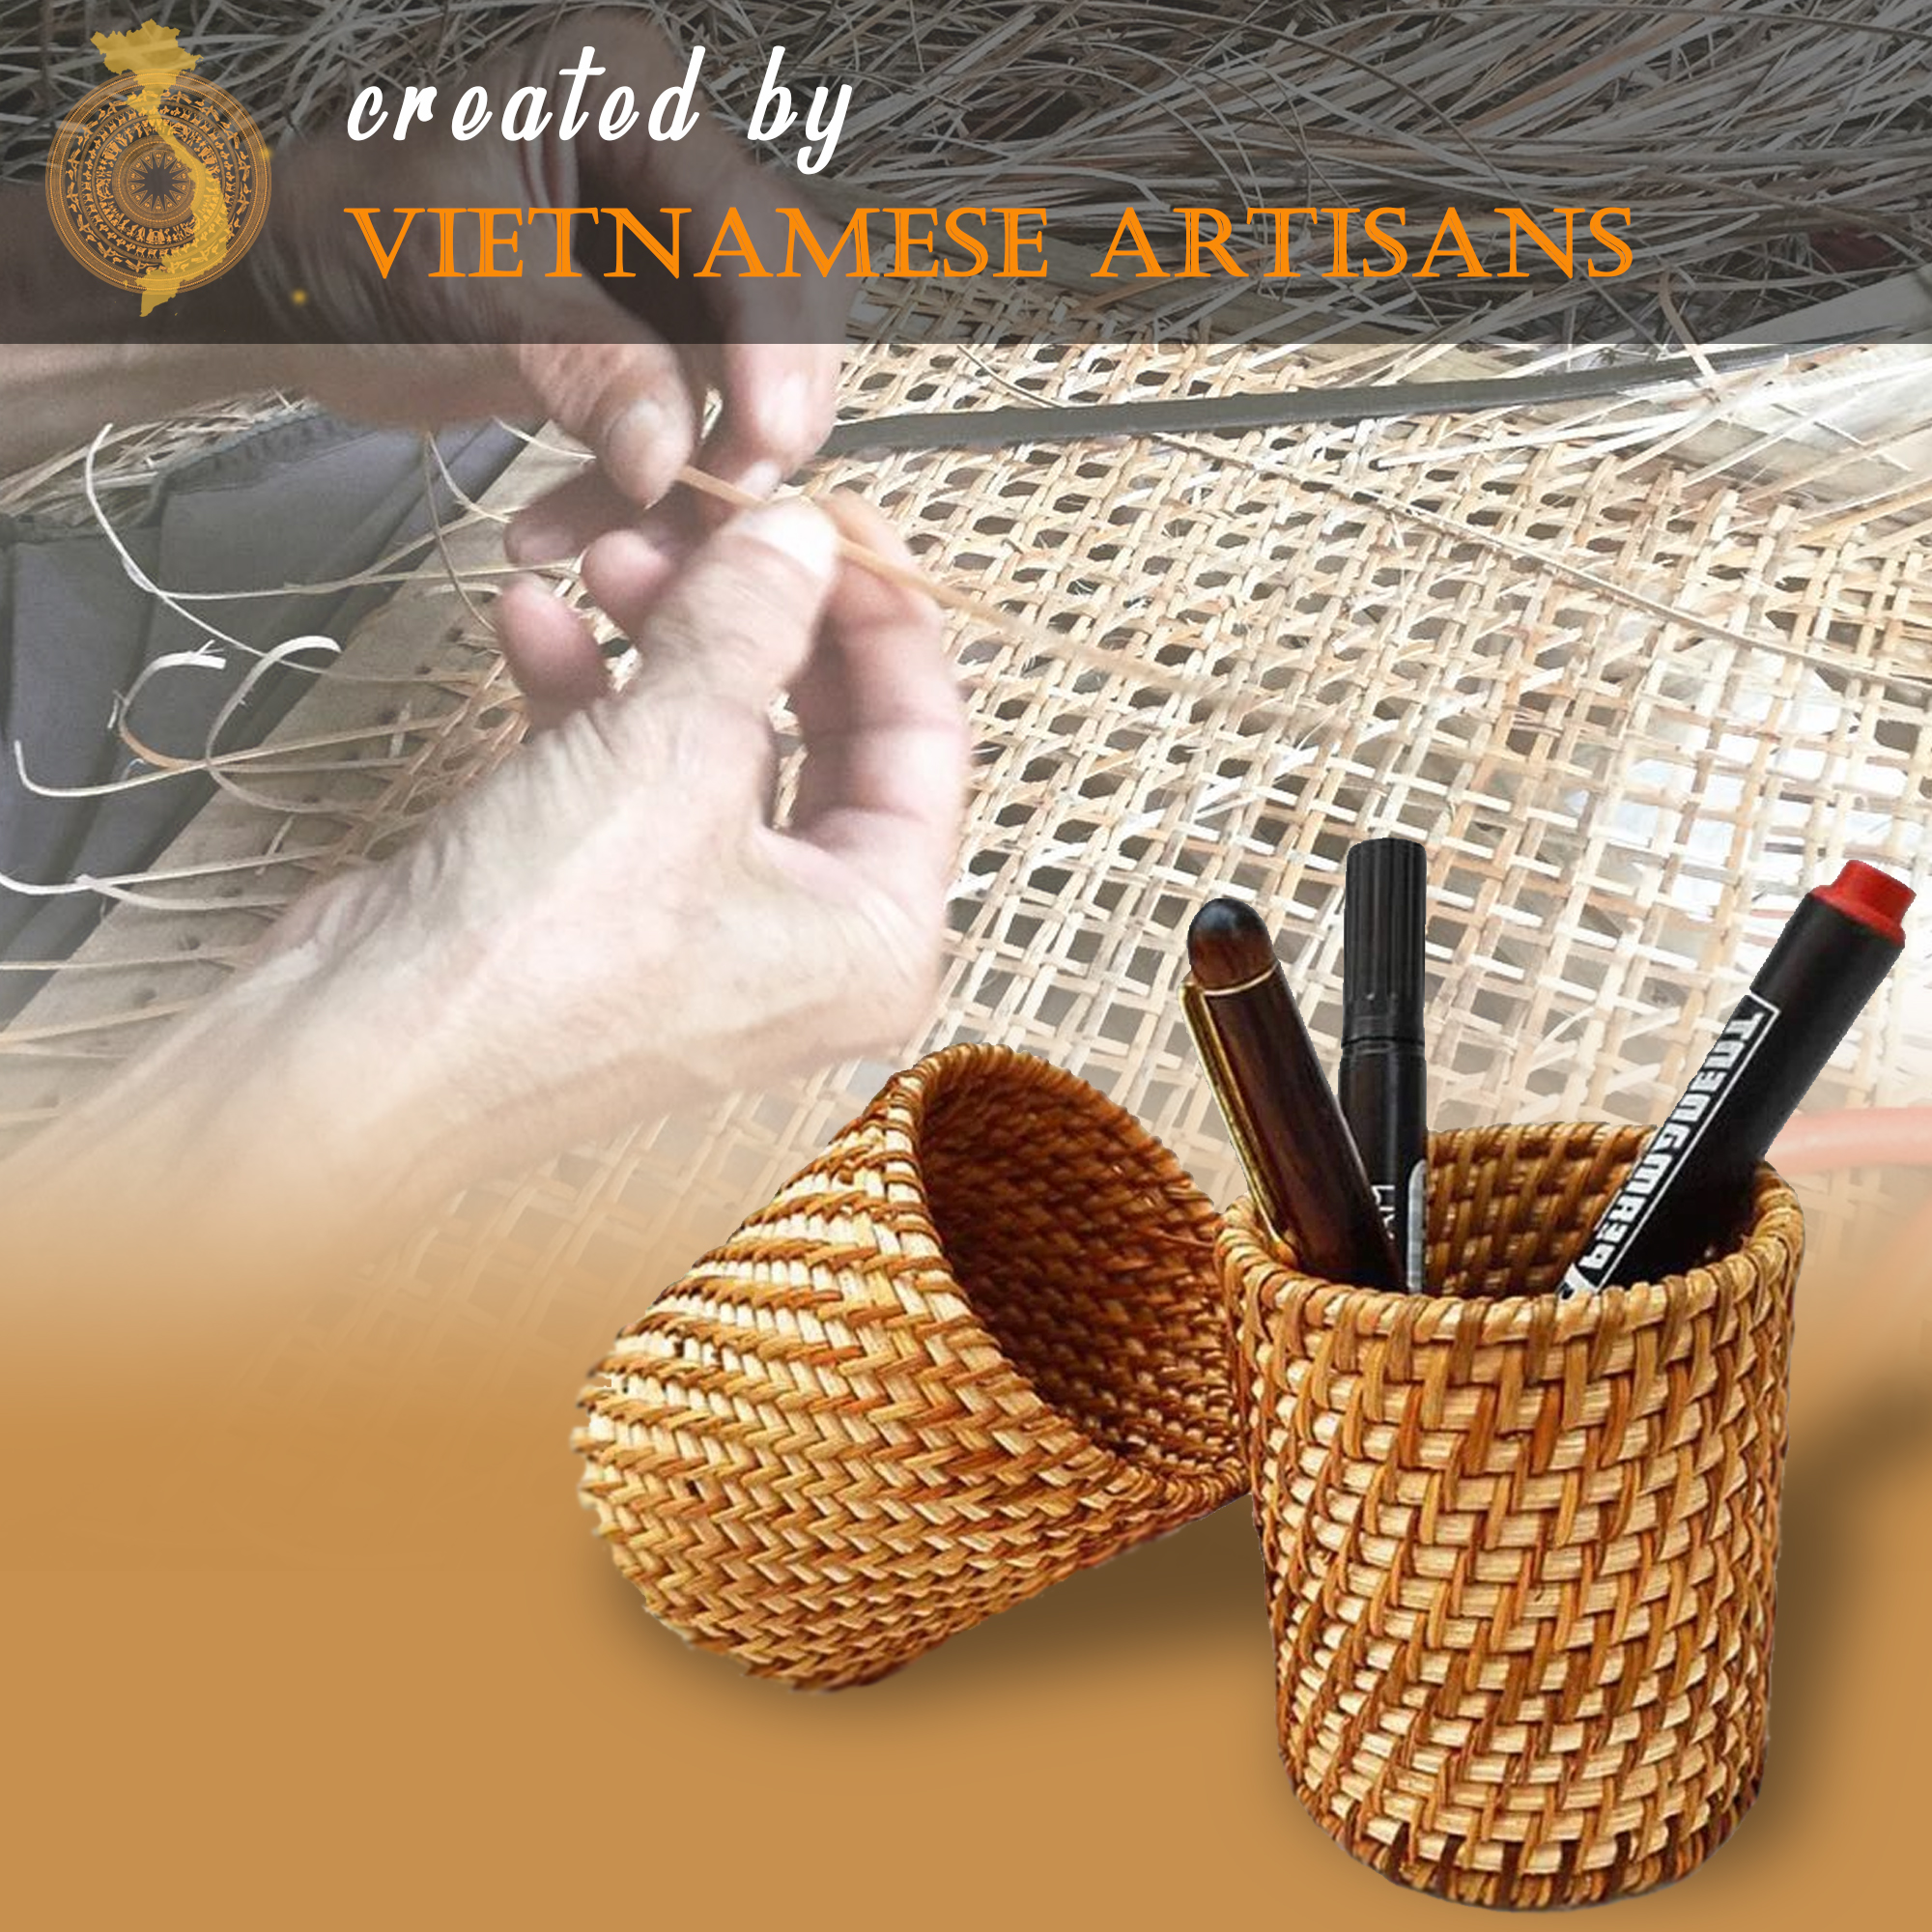 Ống cắm bút bằng mây đan thủ công (APH07), dụng cụ đựng bút để bàn bằng nguyên liệu thiên nhiên thân thiện môi trường